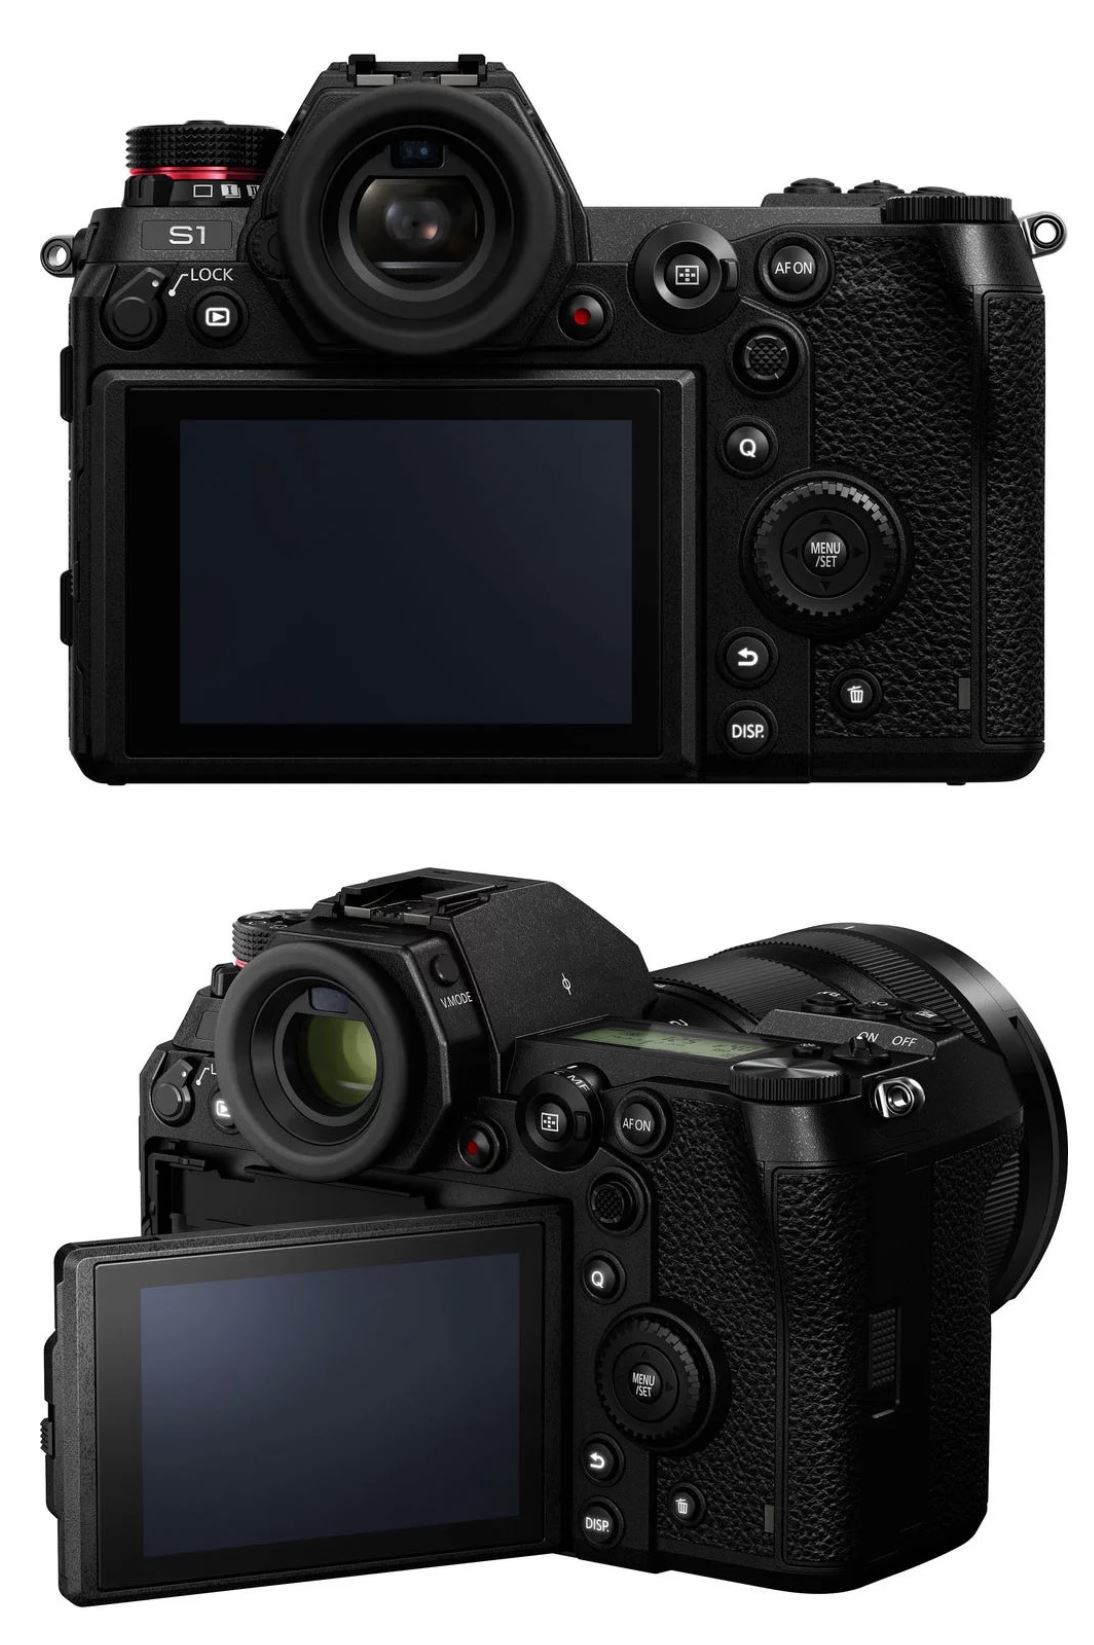 Panasonic chính thức công bố bộ đôi máy ảnh S1/S1R: Full-frame 24 ...